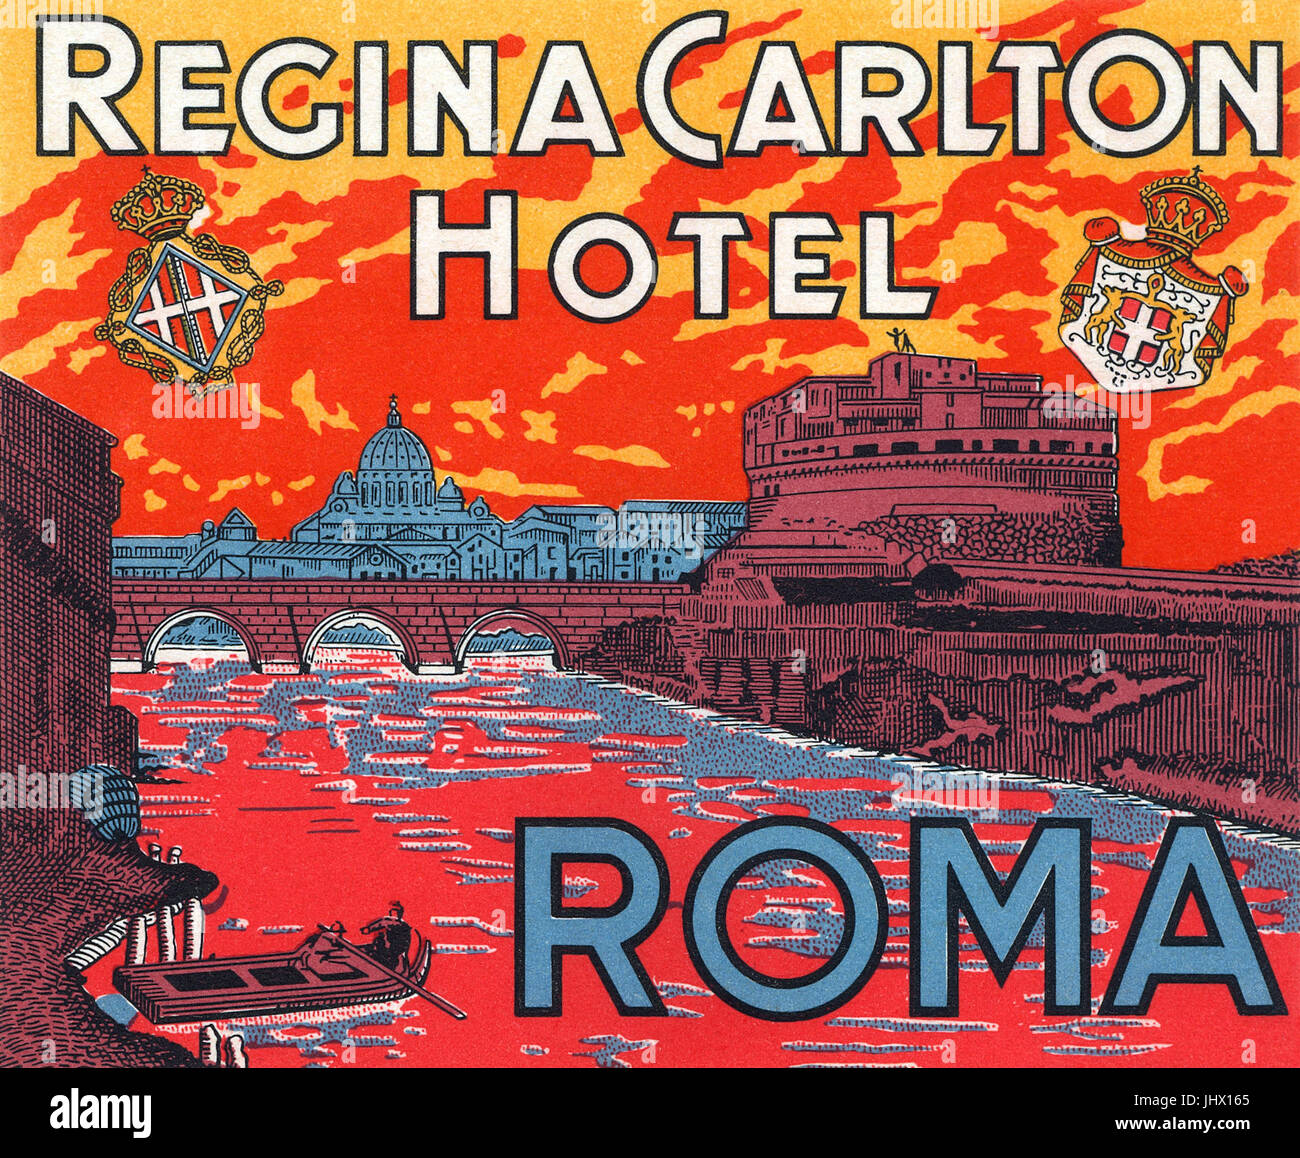 Vintage Gepäck Label für die Regina Carlton Hotel In Rom, Italien. Stockfoto